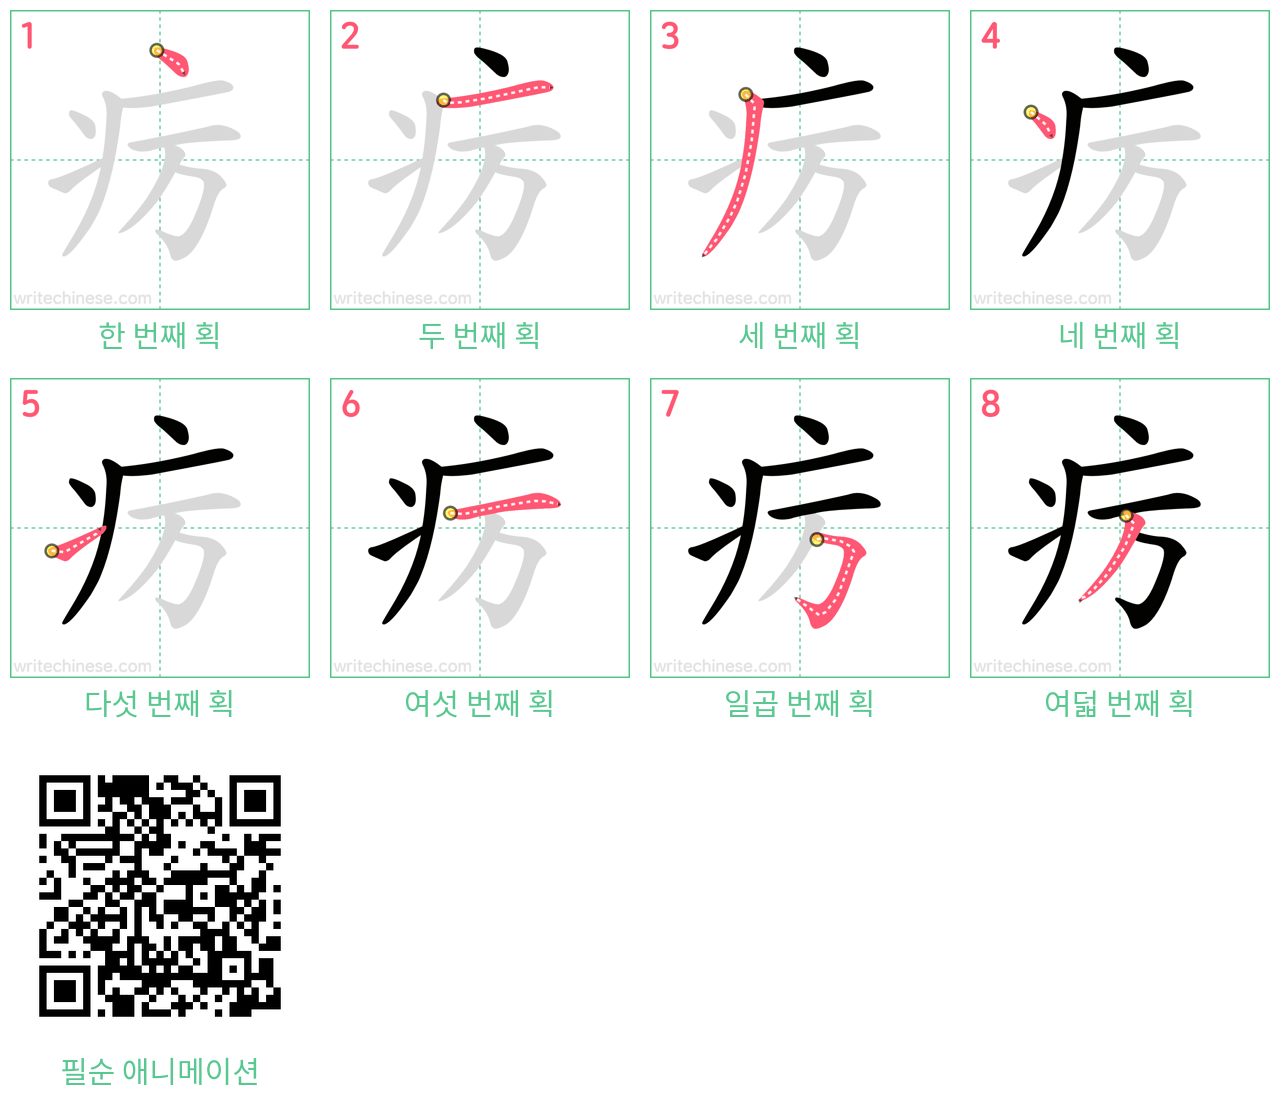 疠 step-by-step stroke order diagrams